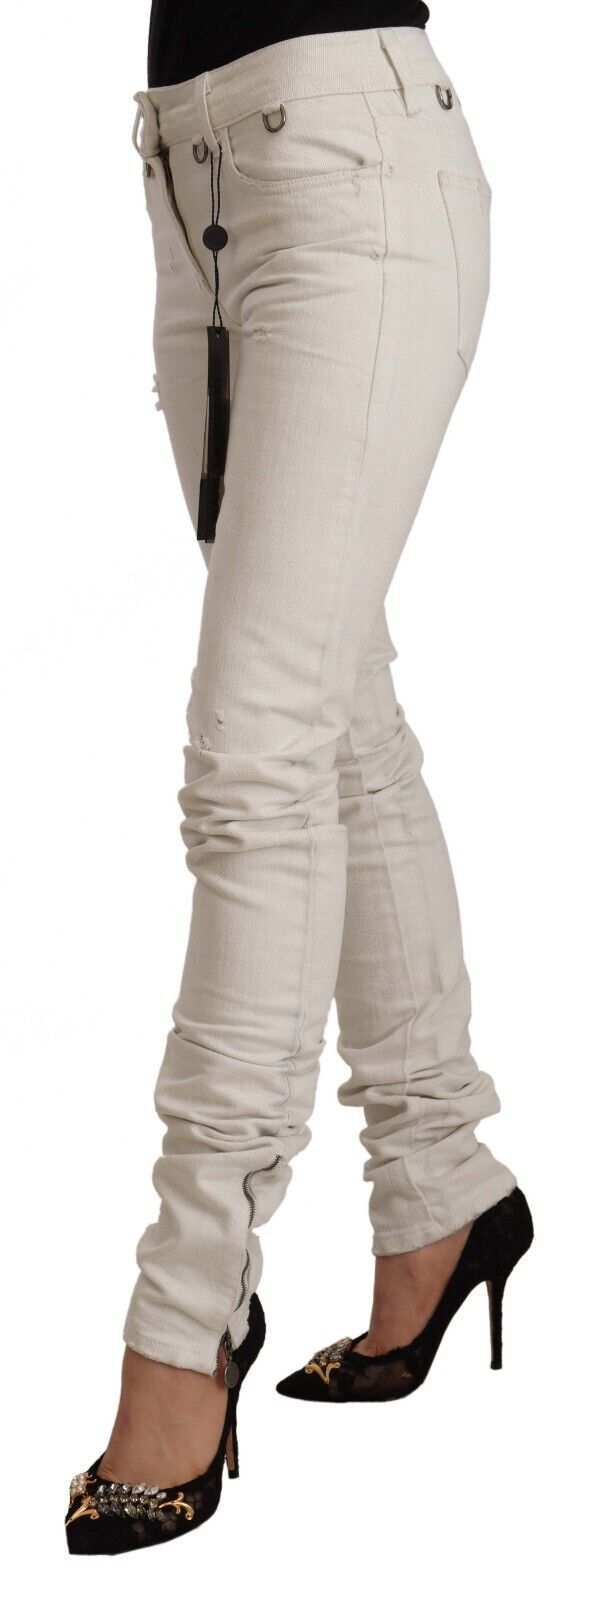 Karl Lagerfeld – Schicke Slim-Fit-Jeans mit mittelhoher Taille in Weiß